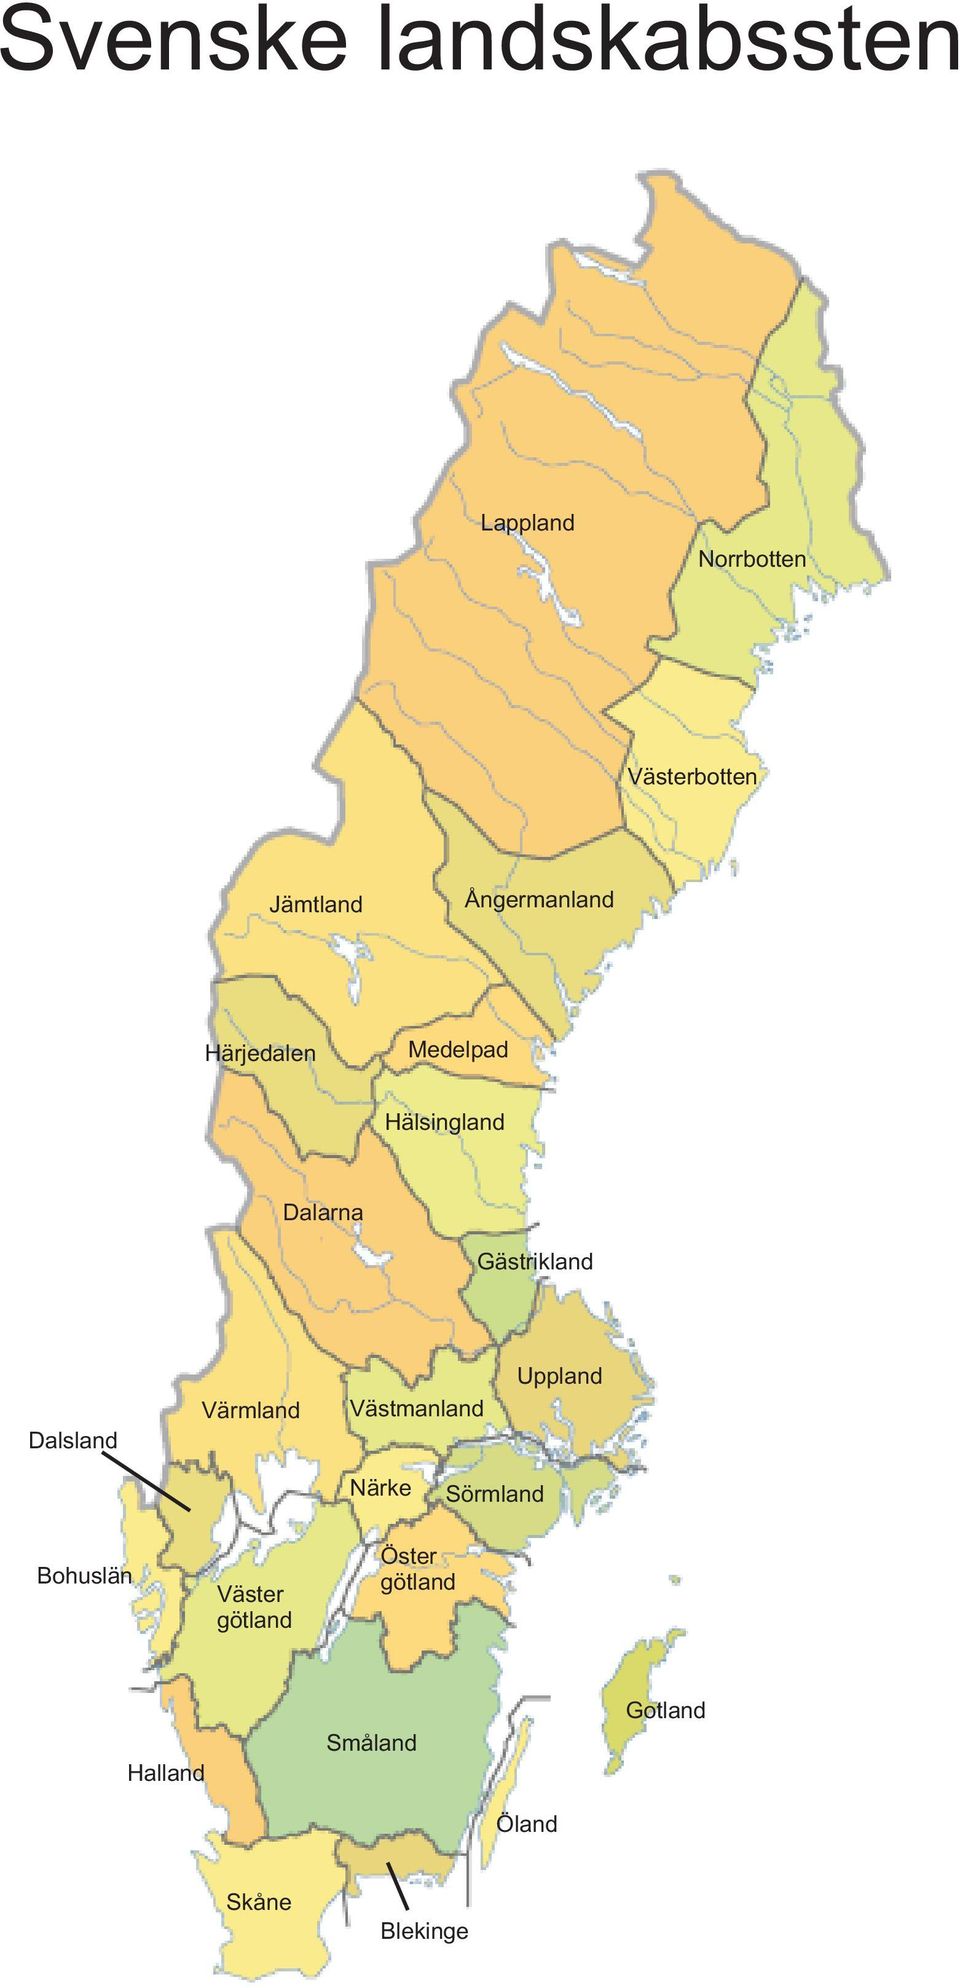 Dalsland Värmland Västmanland Uppland Närke Sörmland Bohuslän